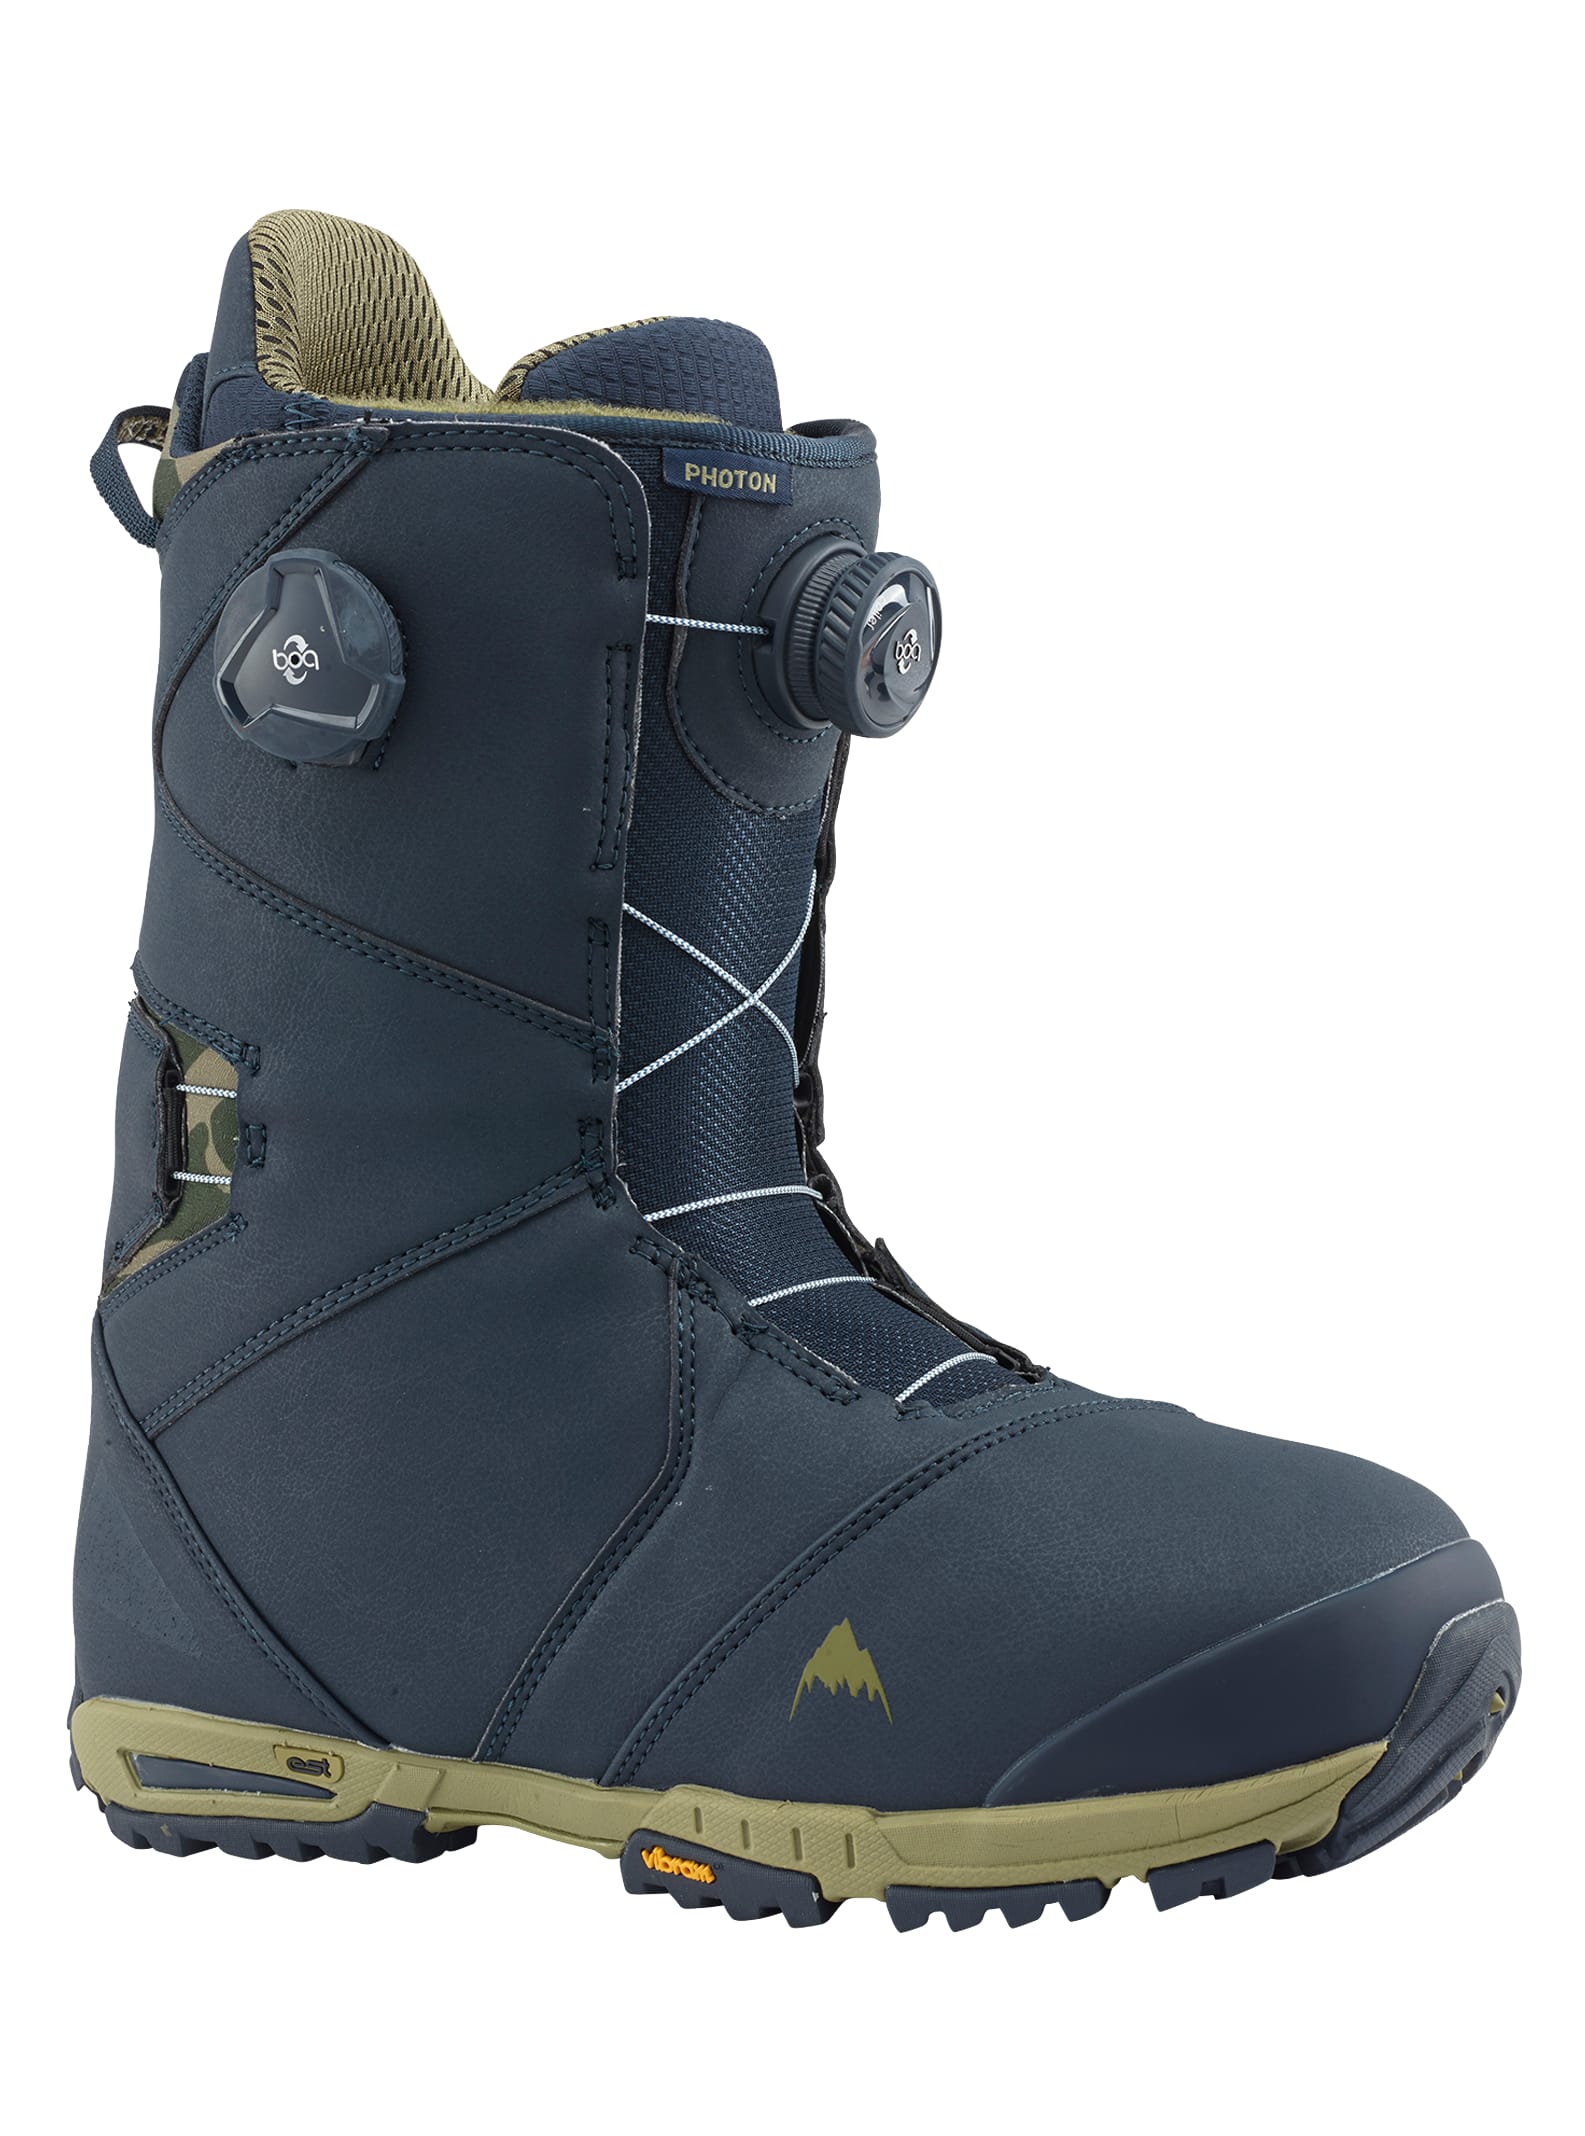 Burton - Boots de snowboard Photon Boa® homme, Blue, 10